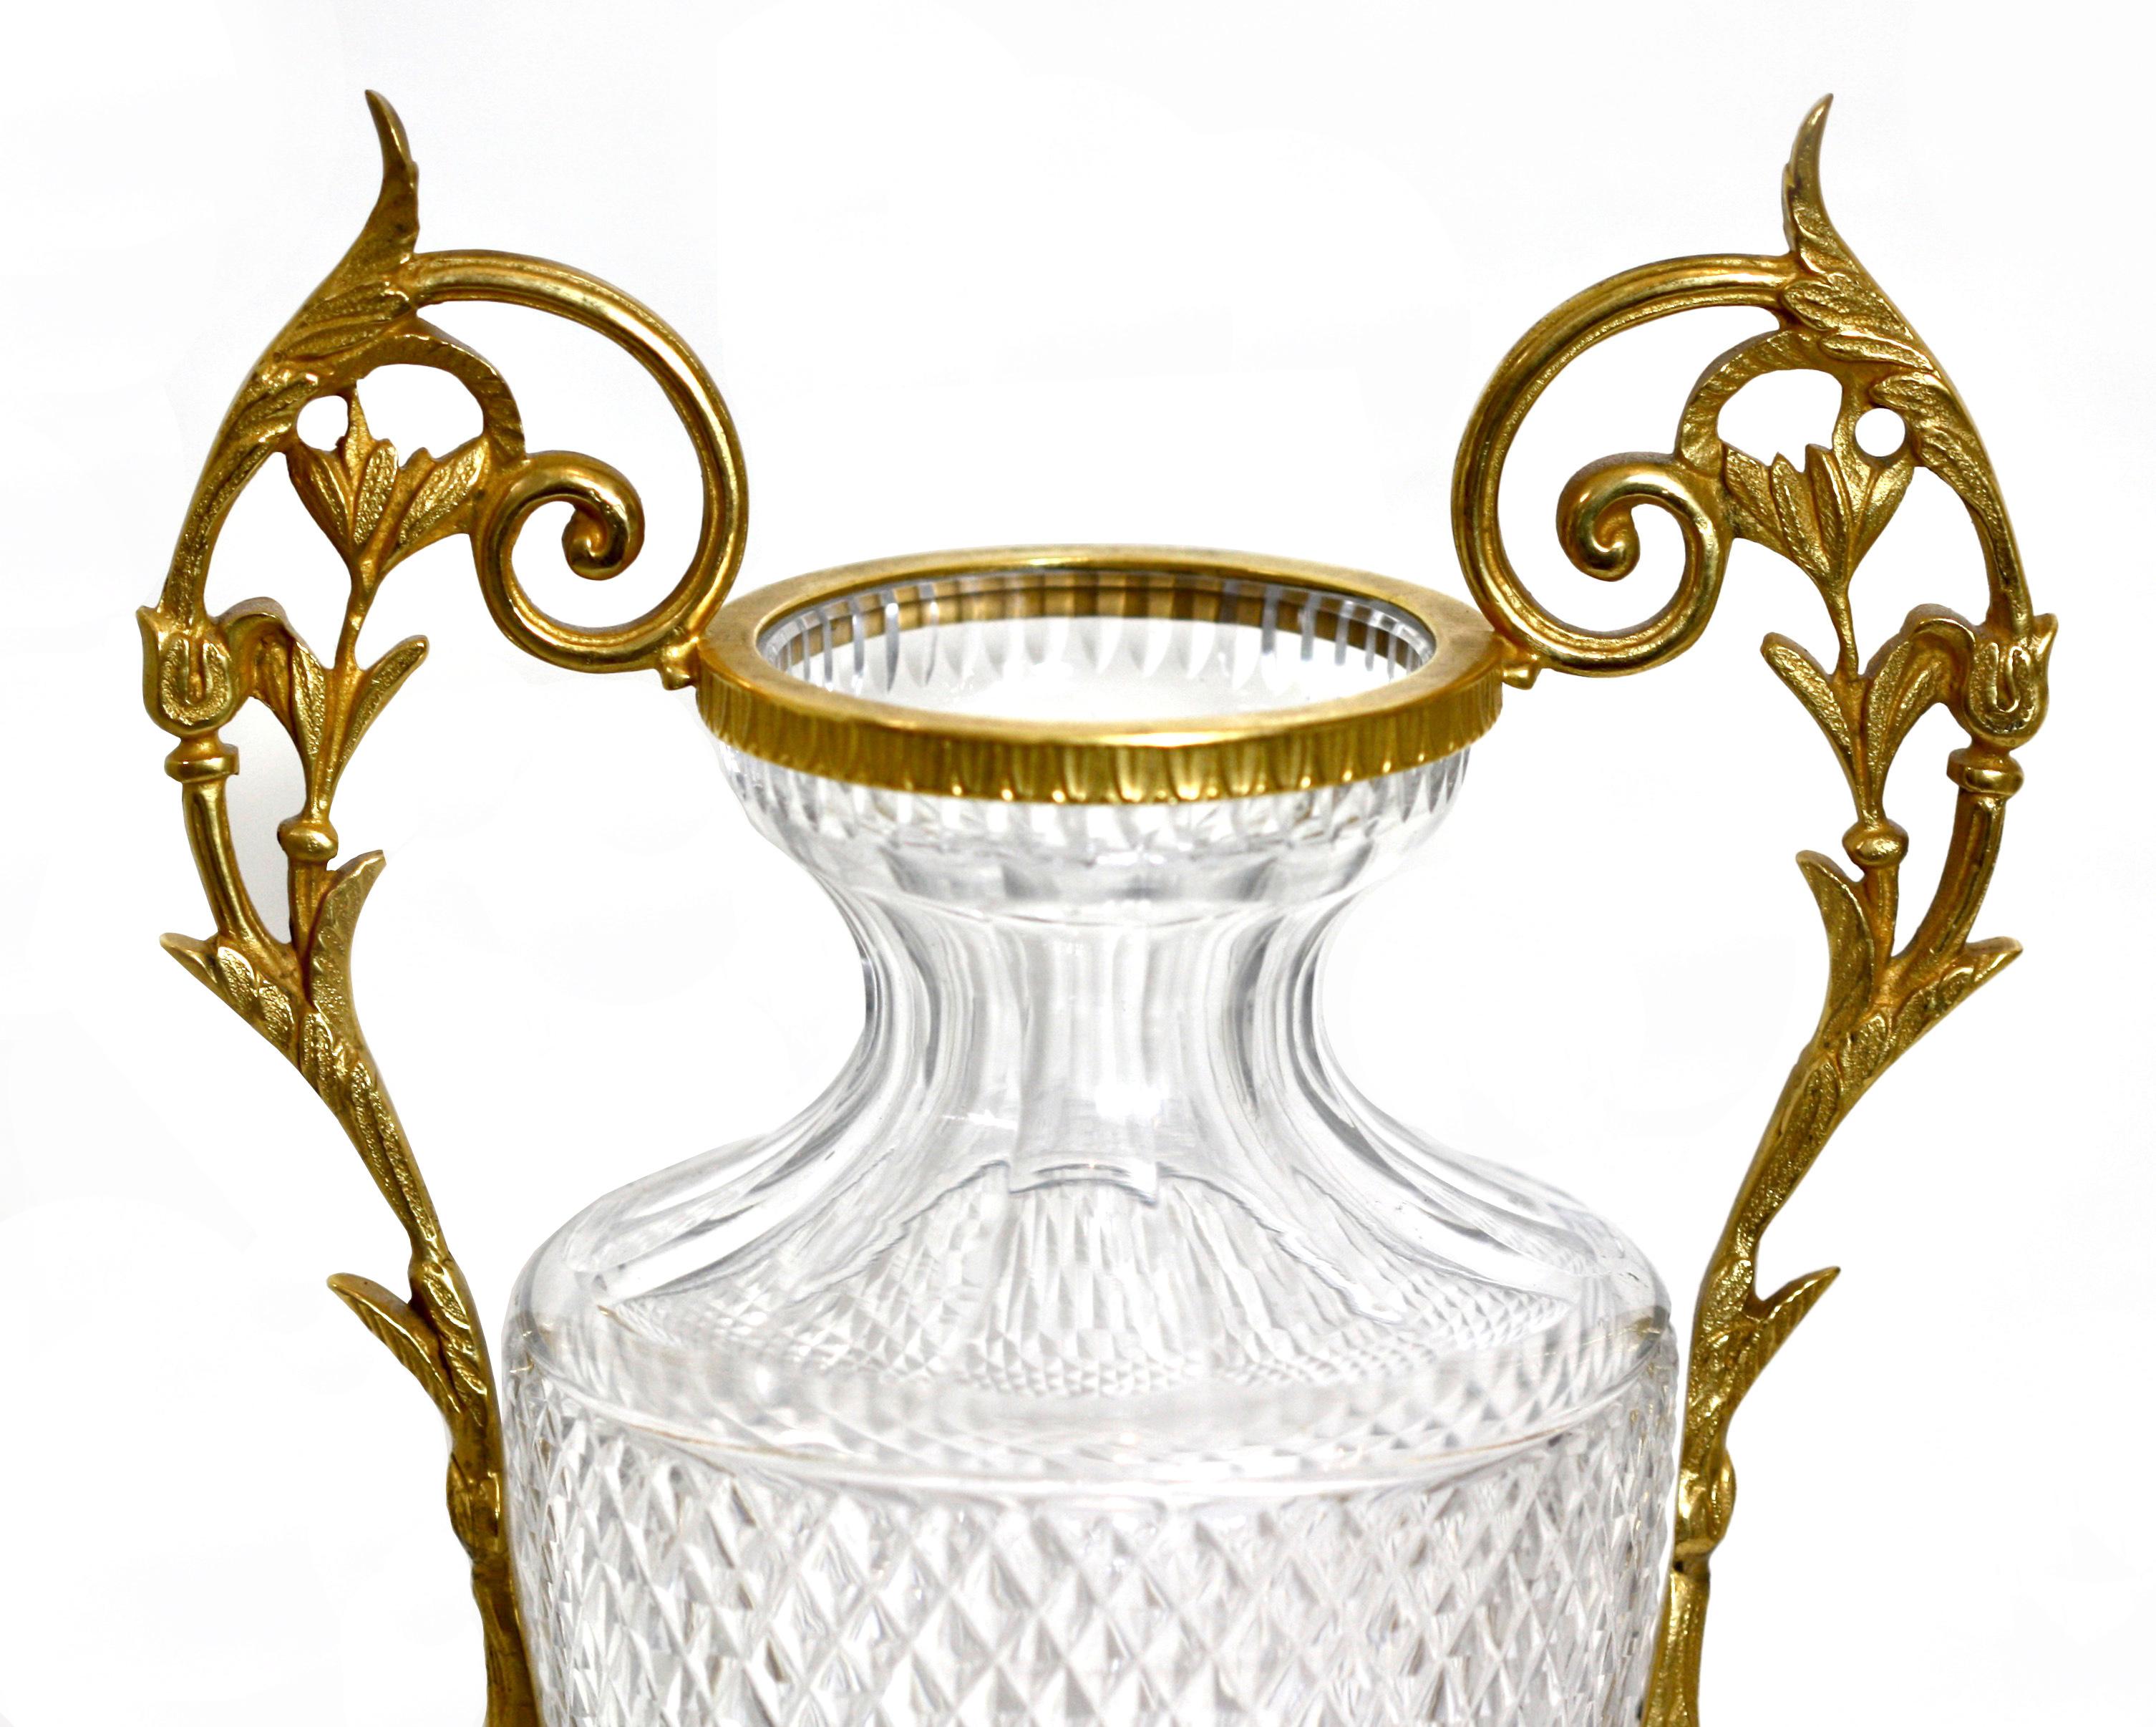 Paar vergoldete Bronze-Urnen im Empire-Stil mit geschliffenem Glas 
20. Jahrhundert. Jede sich verjüngende zylindrische Form wird von Blattwerk flankiert 
schneckengriffe auf einem quadratisch hinterschnittenen Sockel. 
Maße: Höhe 13 in. (33,02